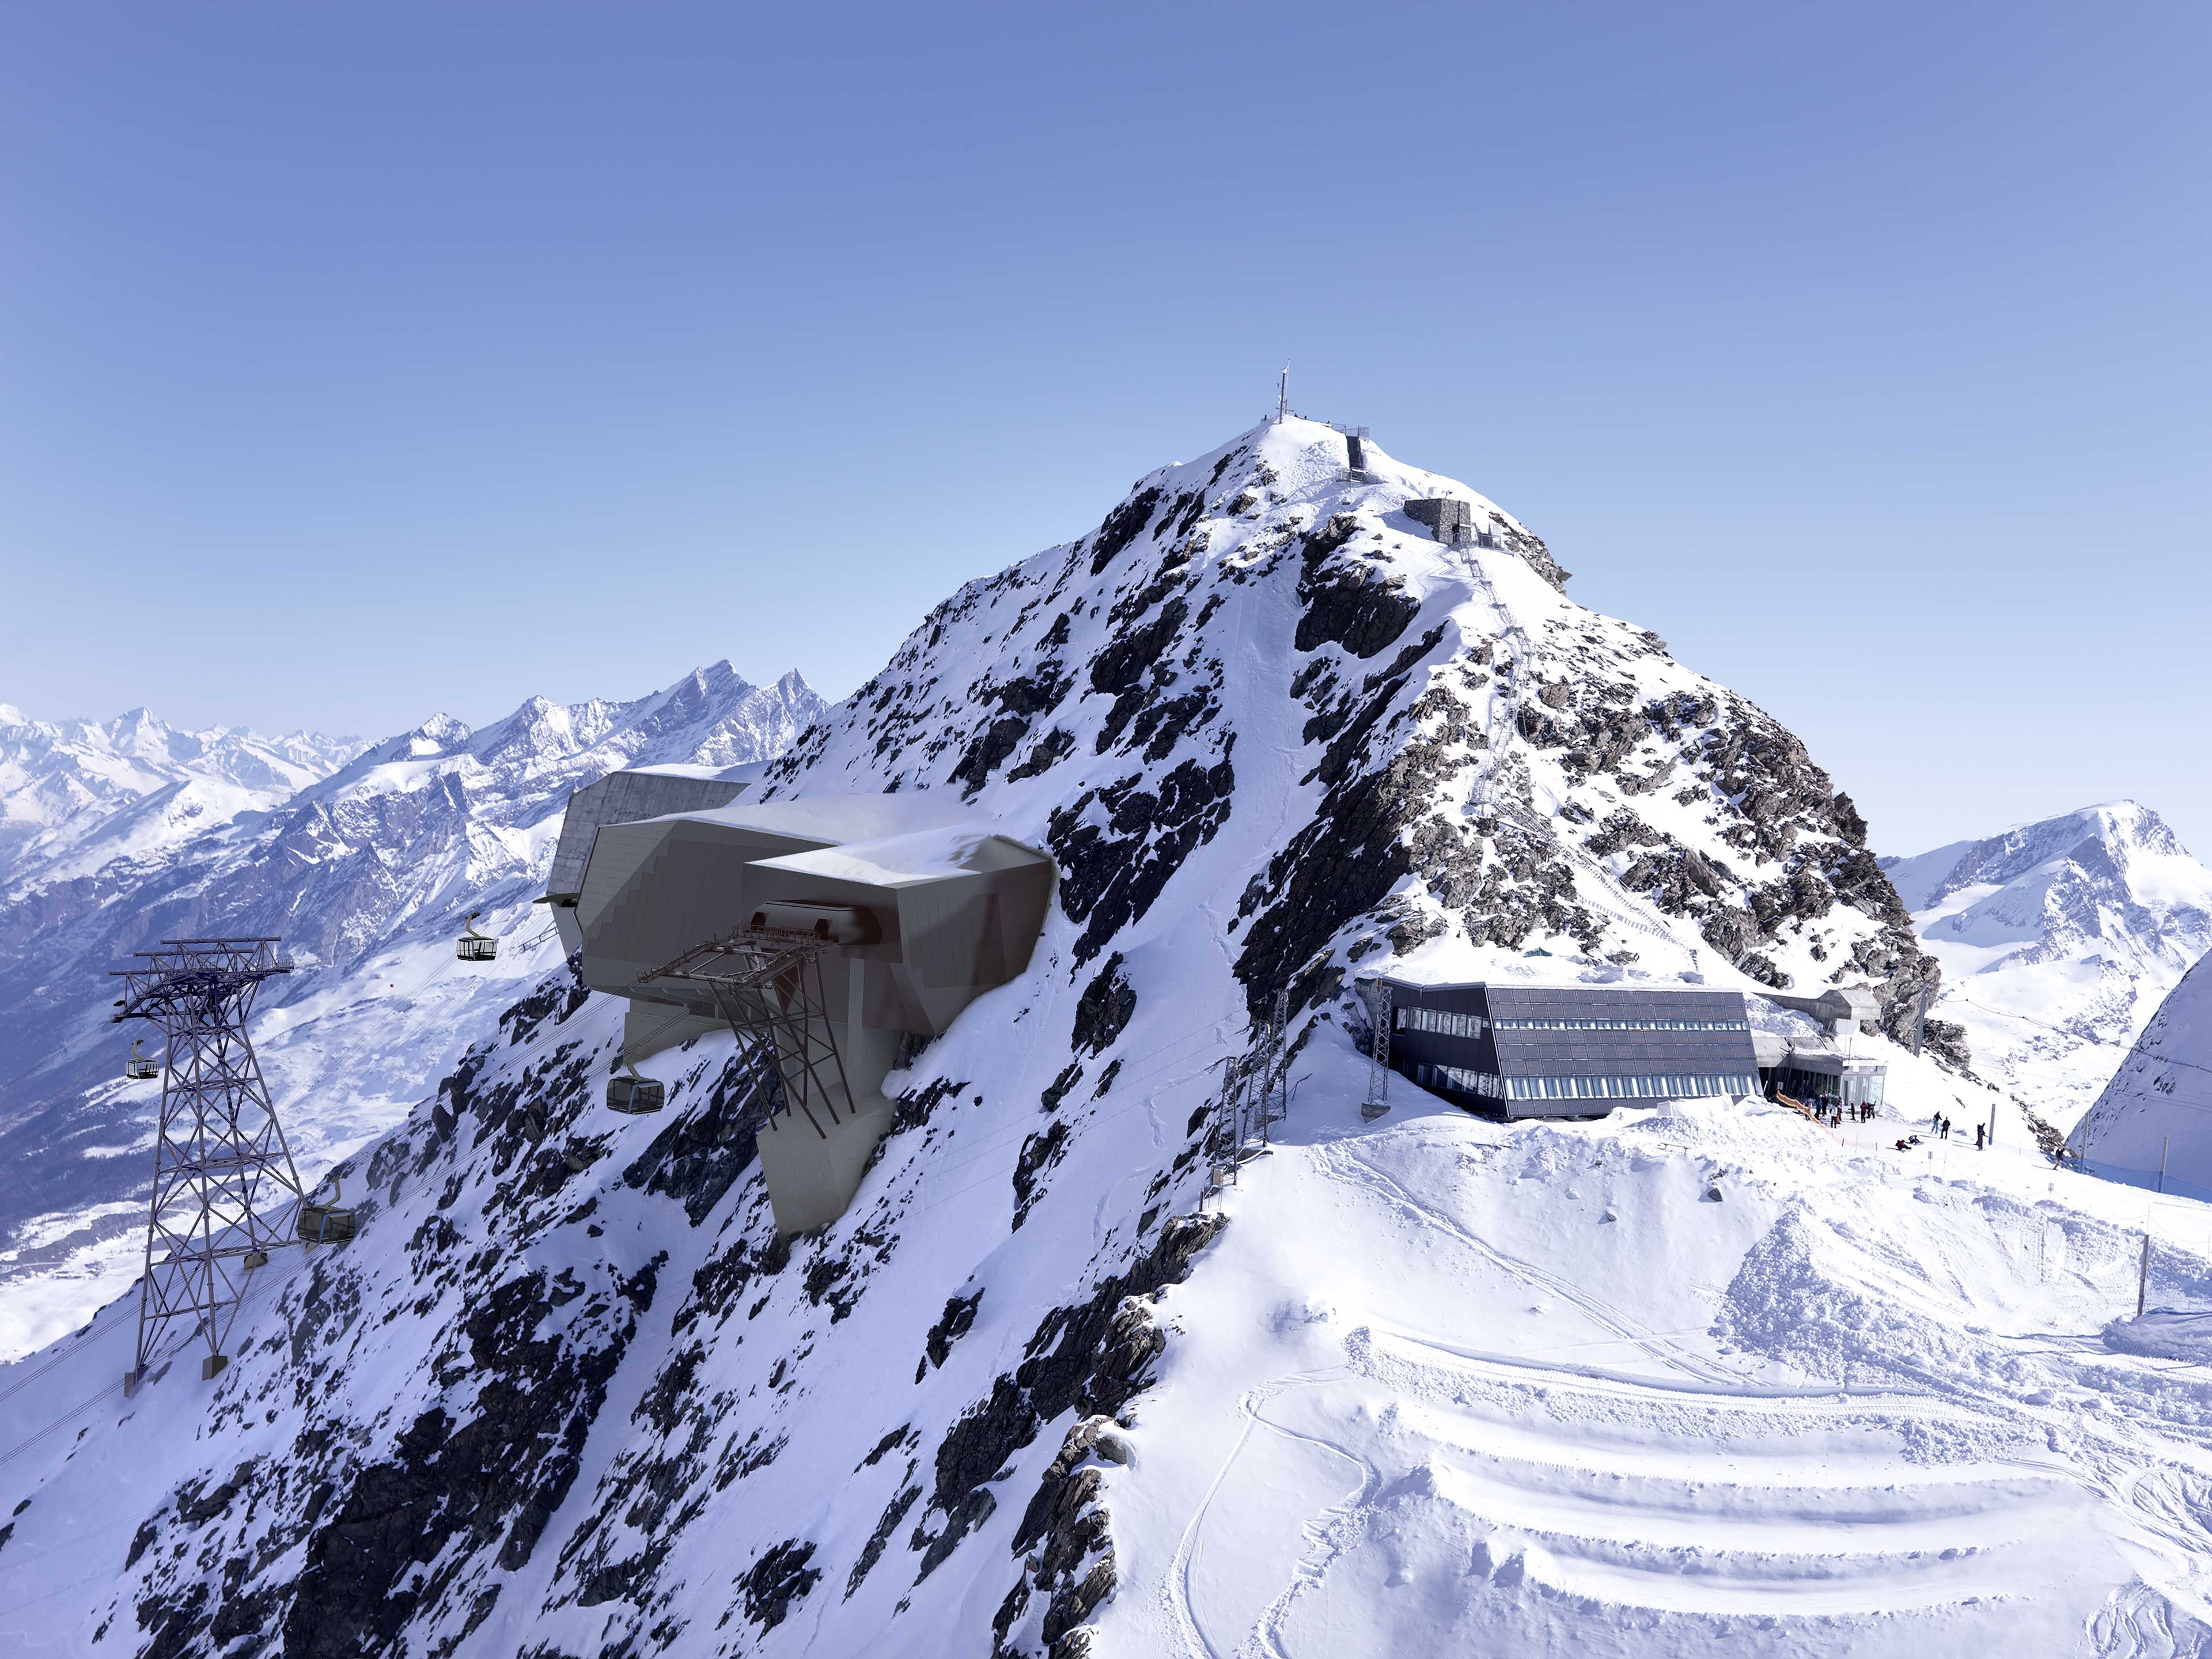 Alpine Crossing: New link between Zermatt and Cervinia